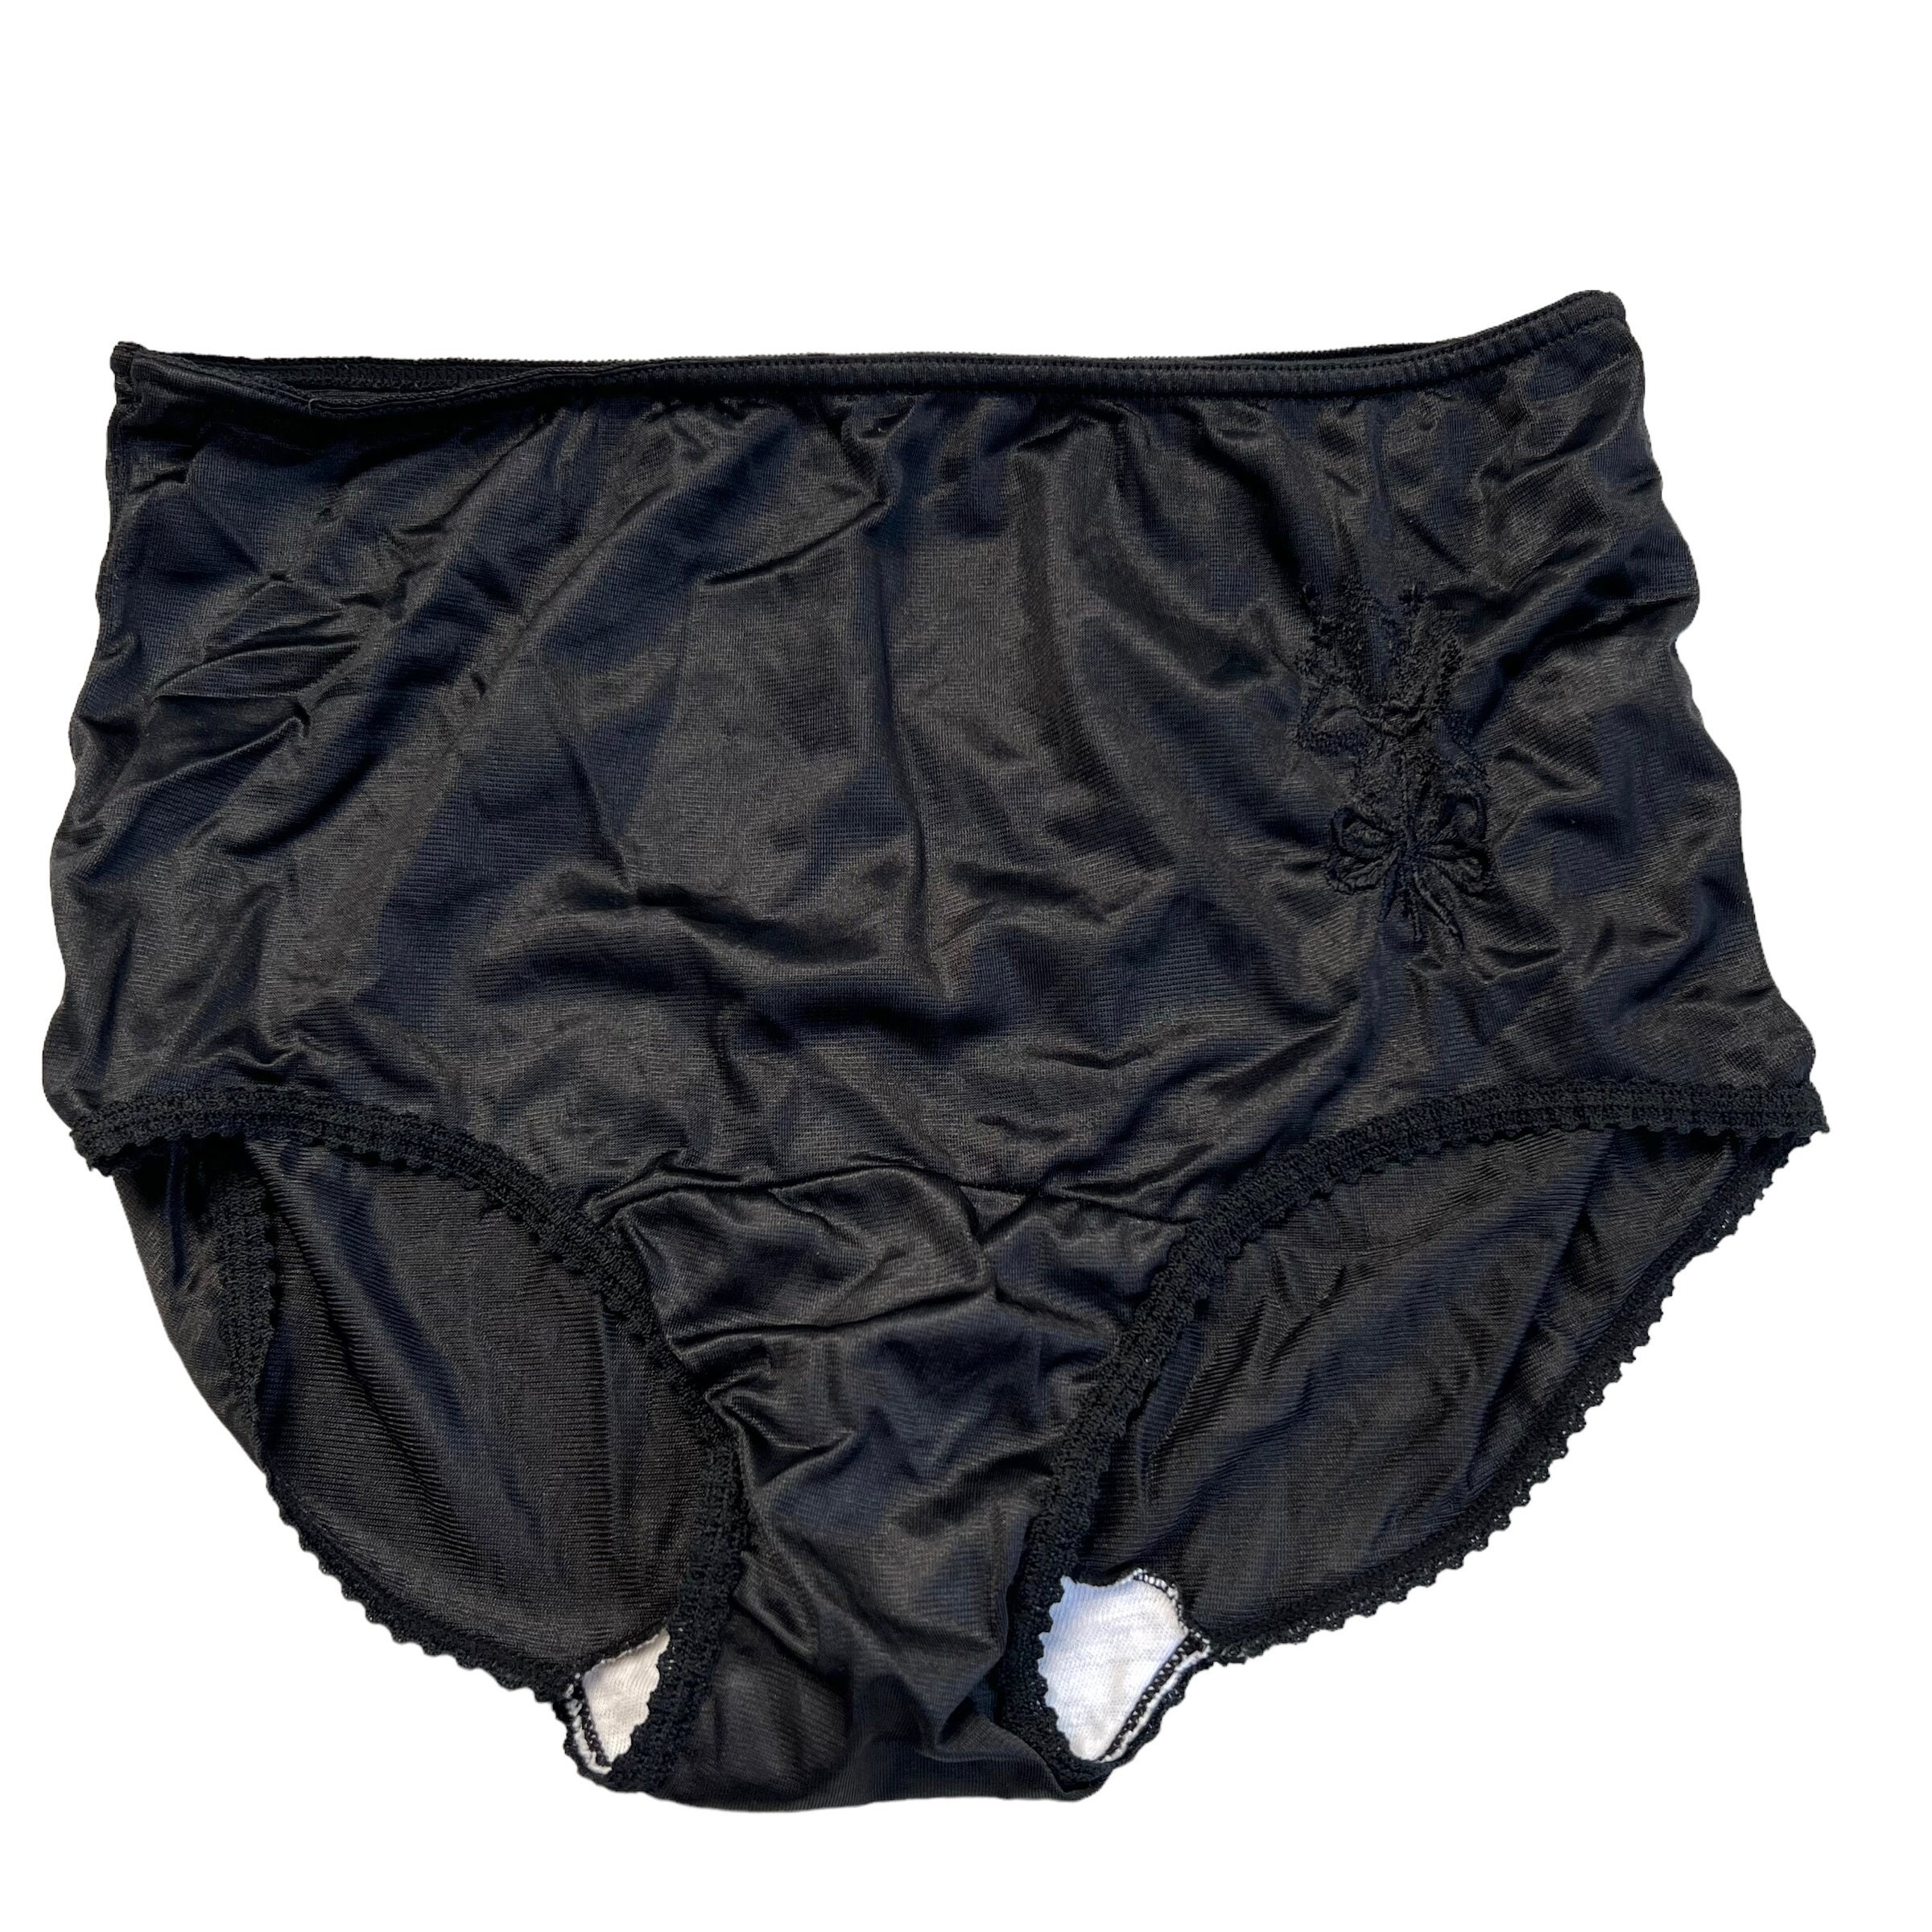 Vintage JOCKEY For Her Panties Black Nylon Spandex Made in U.S.A